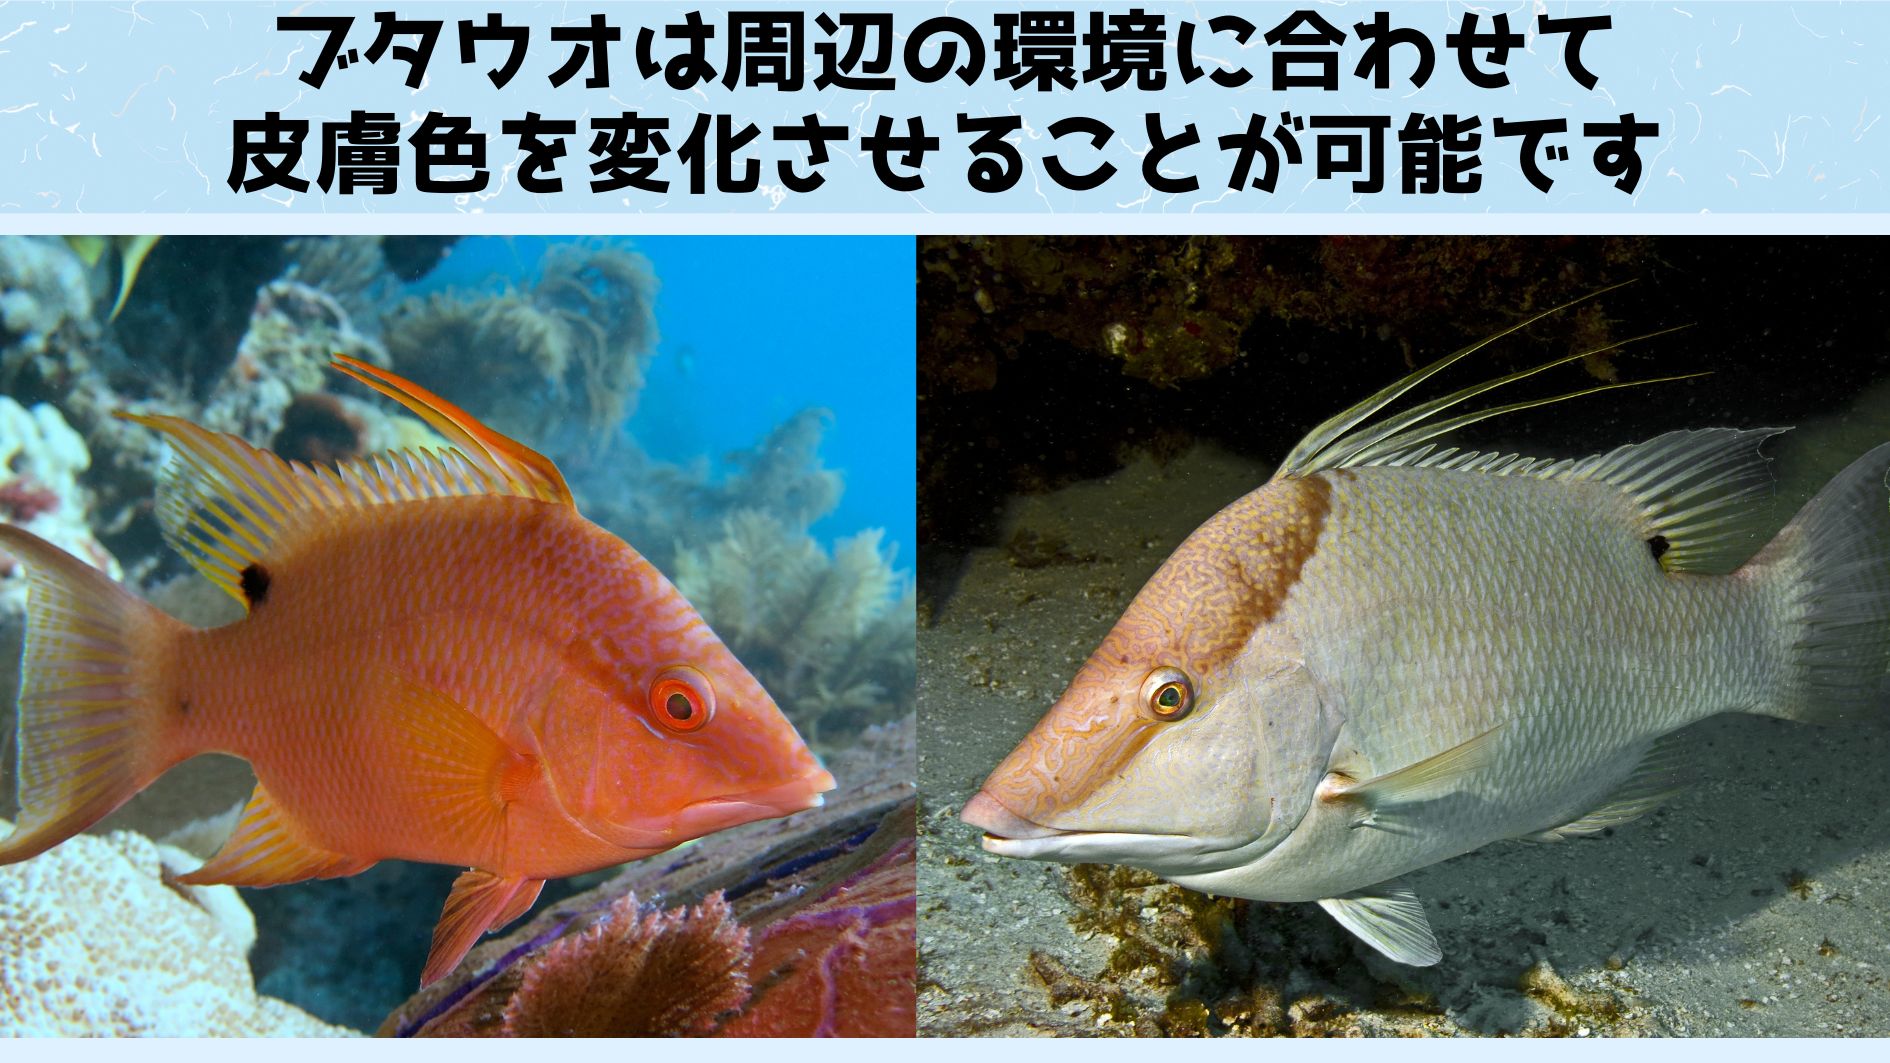 ブタウオは環境に合わせて皮膚の色を1秒以内に変化させられる魚です